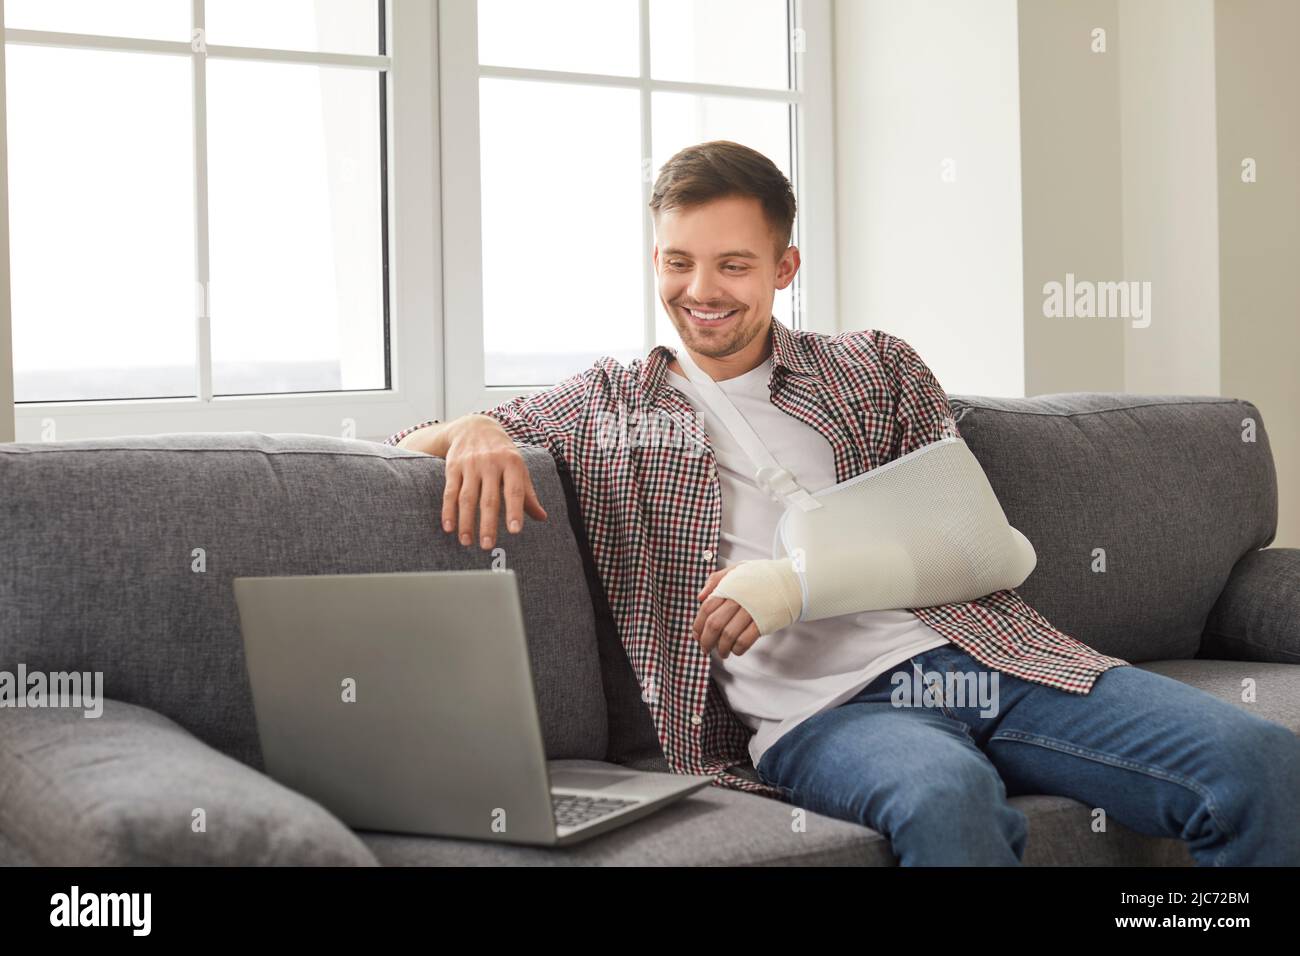 Mann mit gebrochenem Arm, der Filme auf einem Laptop ansieht oder zu Hause über einen Videolink mit Freunden spricht. Stockfoto